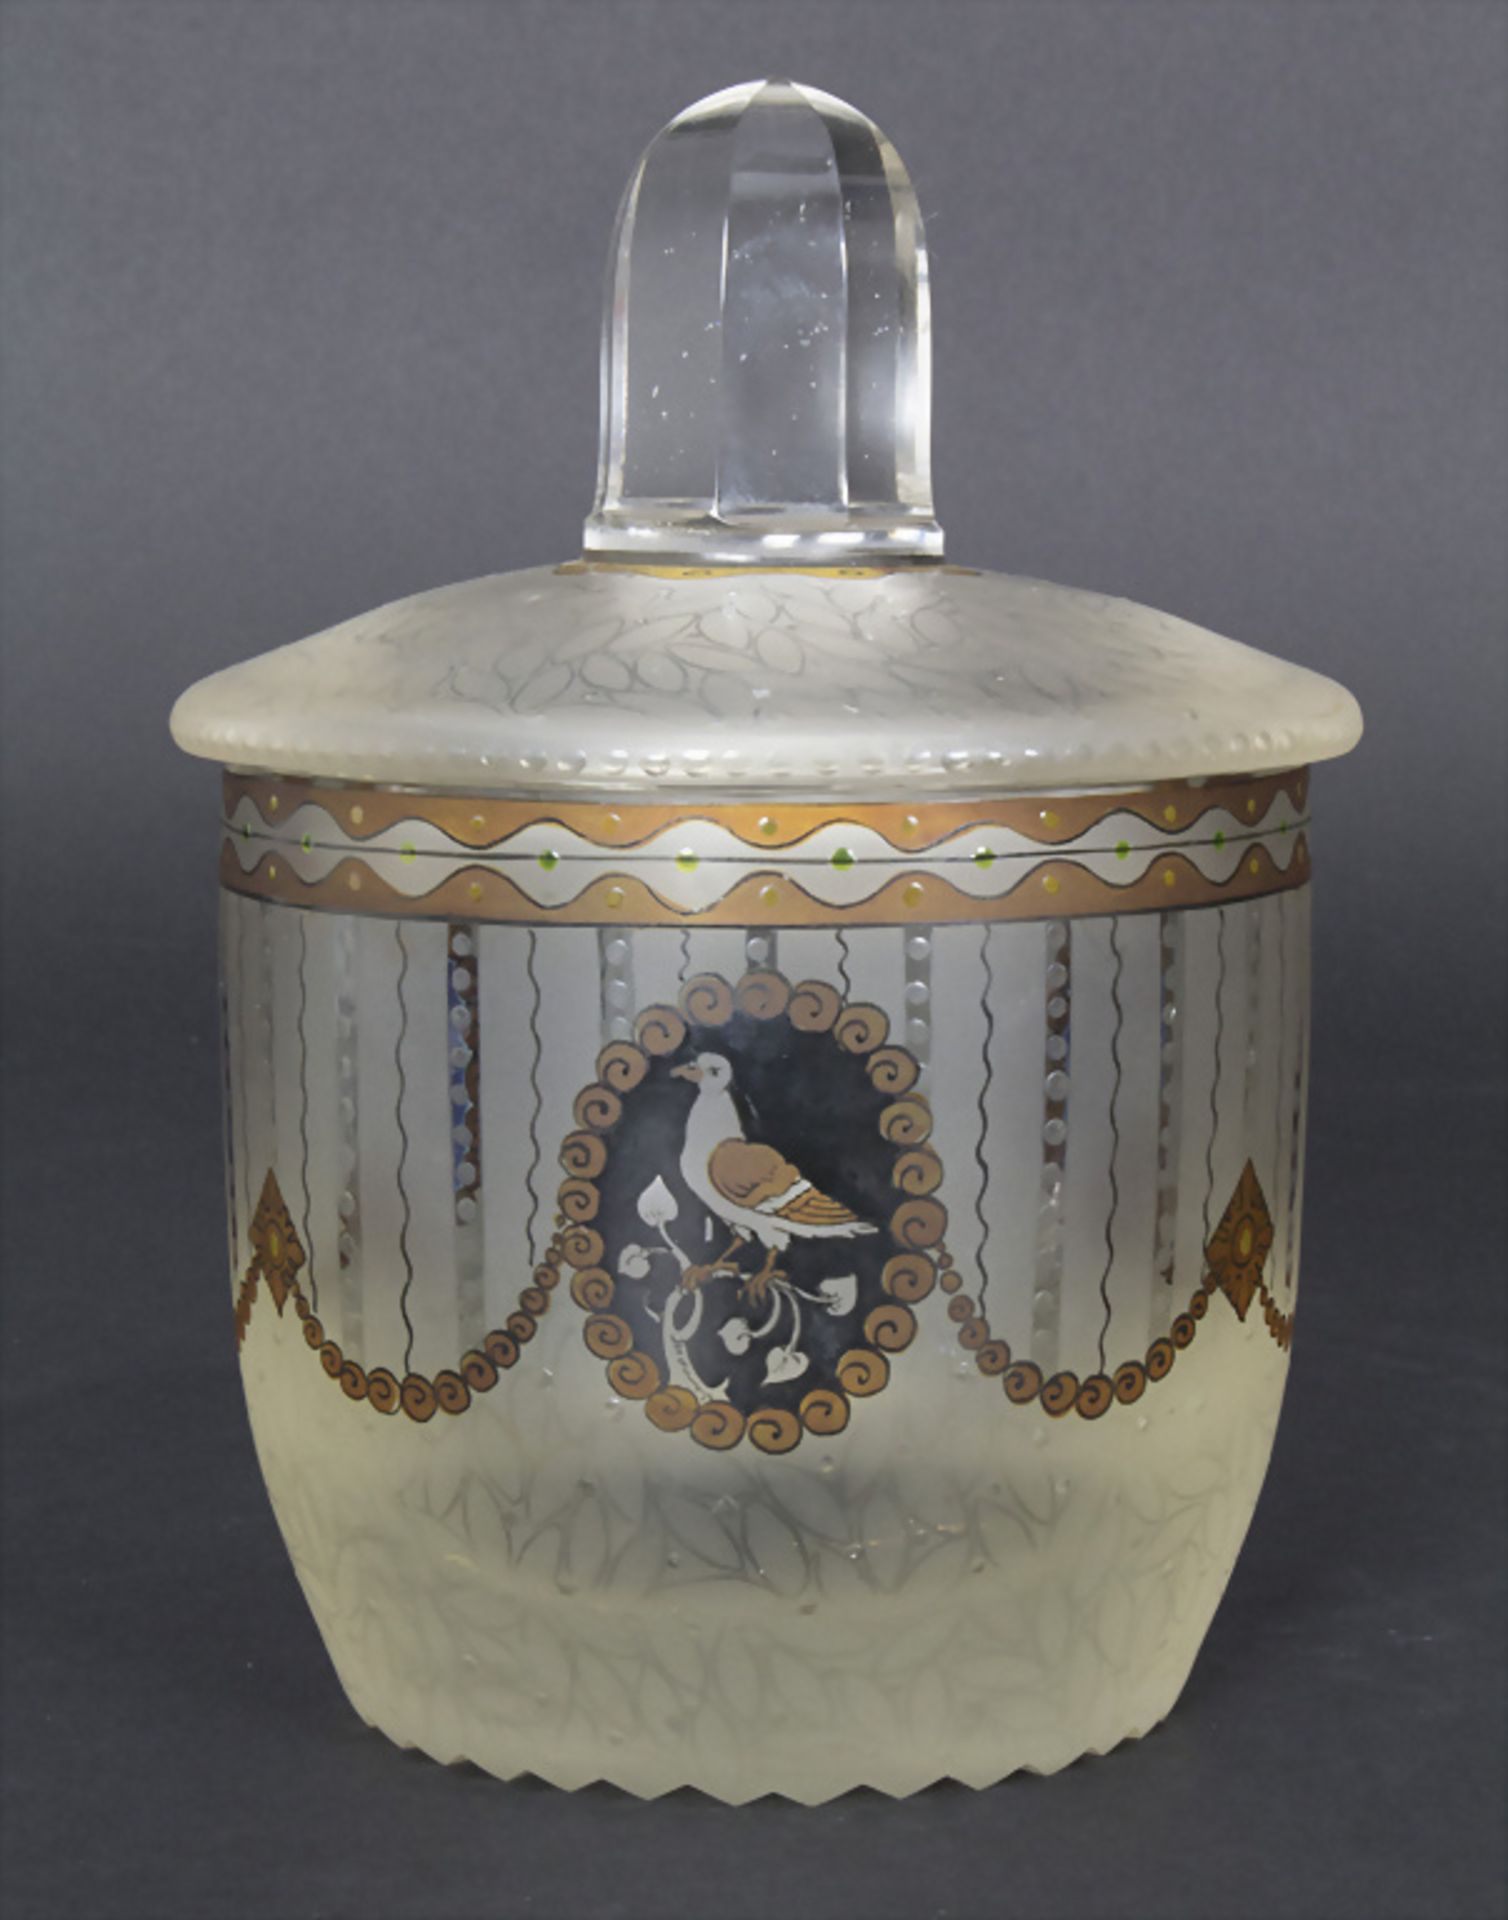 Jugendstil Deckelgefäß mit Transparentemaildekor / An Art Nouveau covered bowl with ... - Image 3 of 6